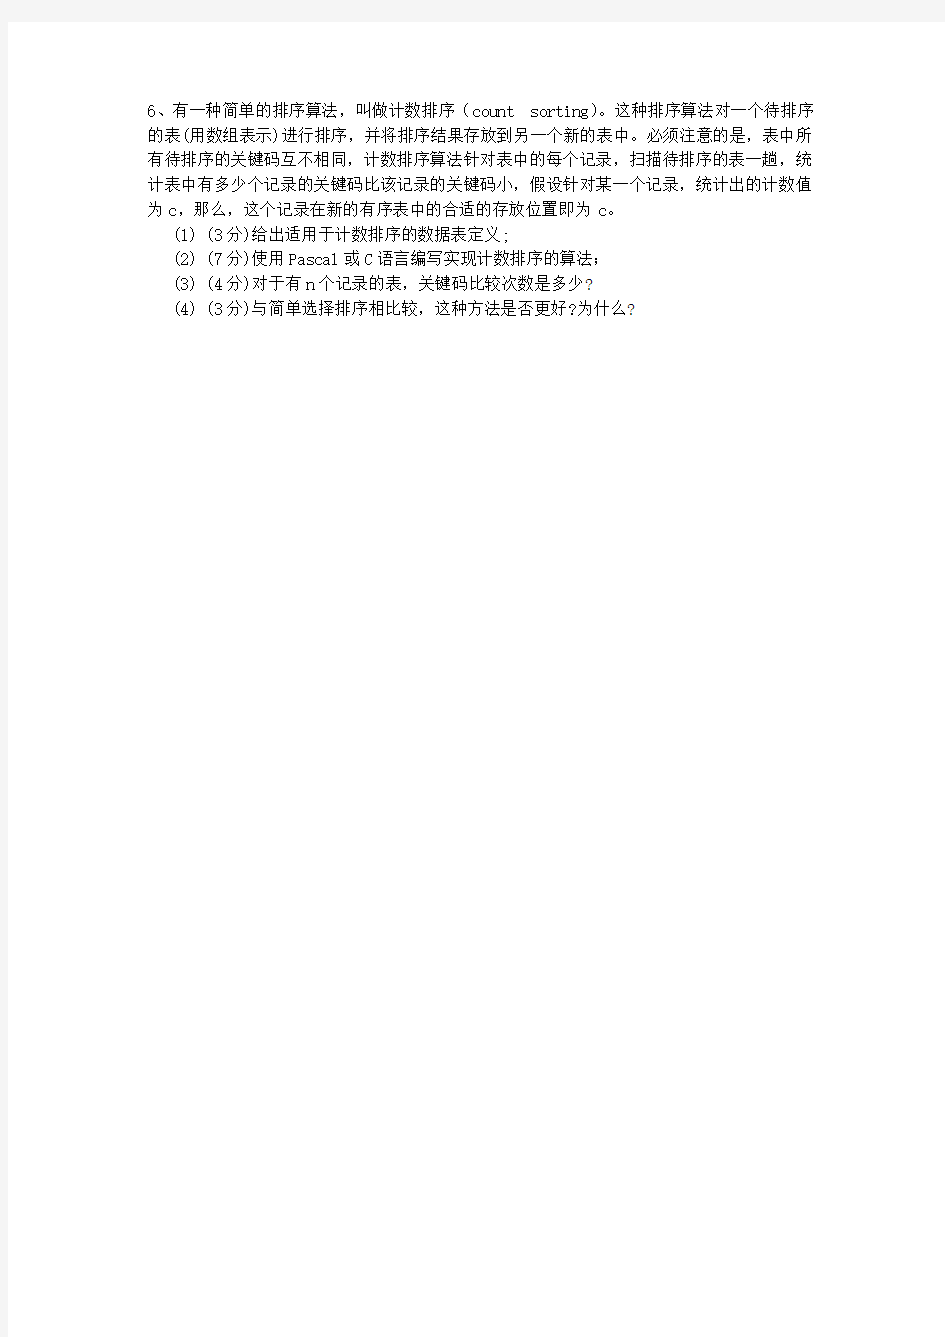 2015年台湾省数据总结纲要